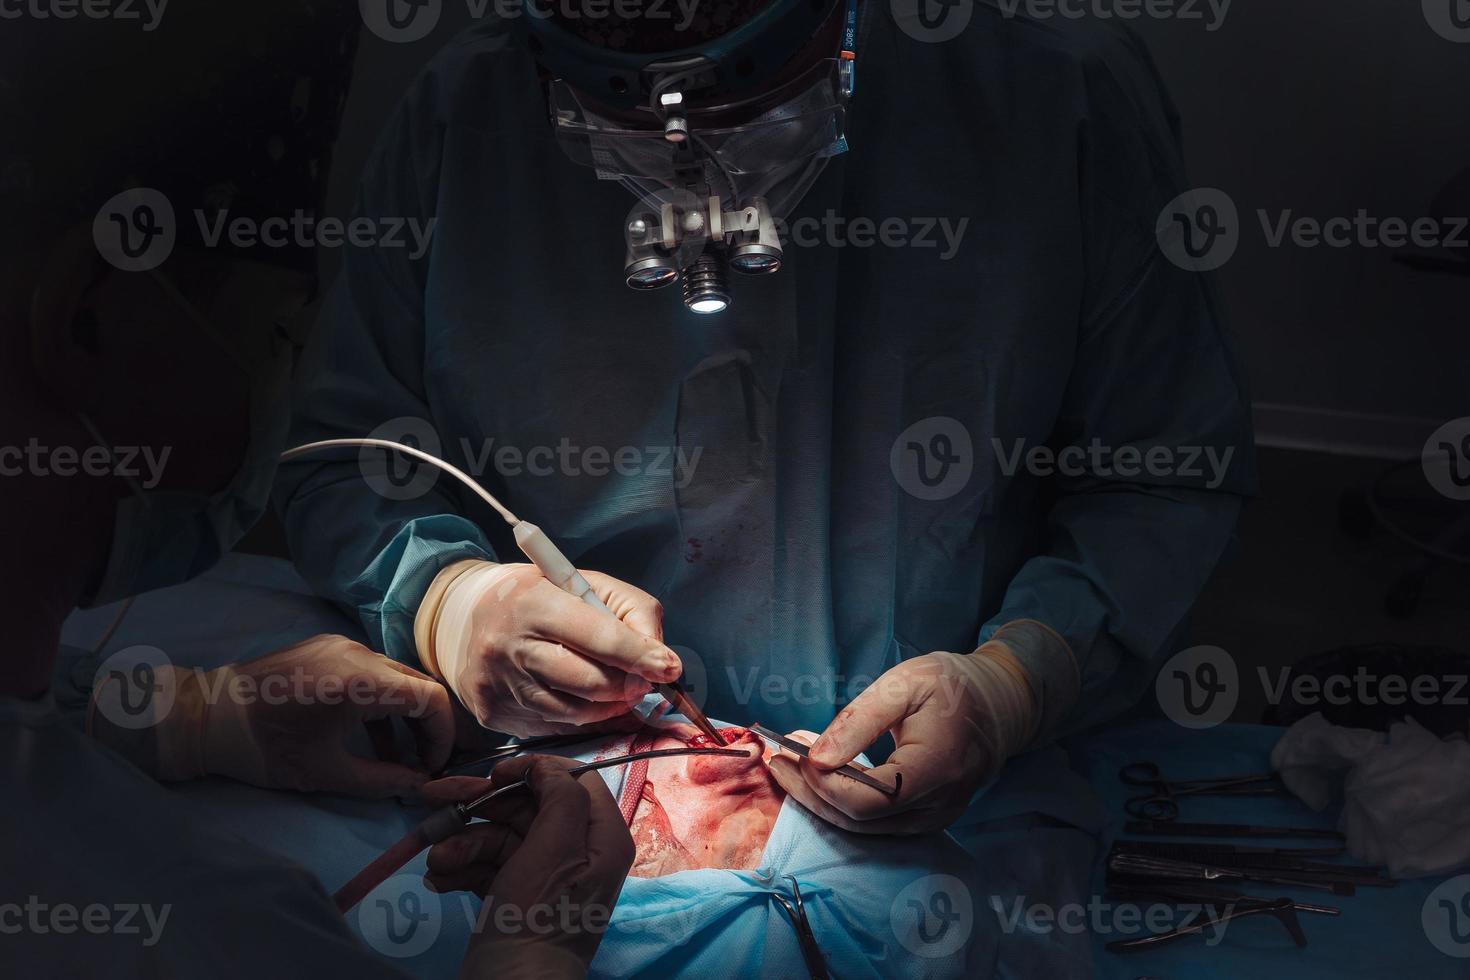 chirurgien et son assistant effectuant une chirurgie esthétique du nez photo